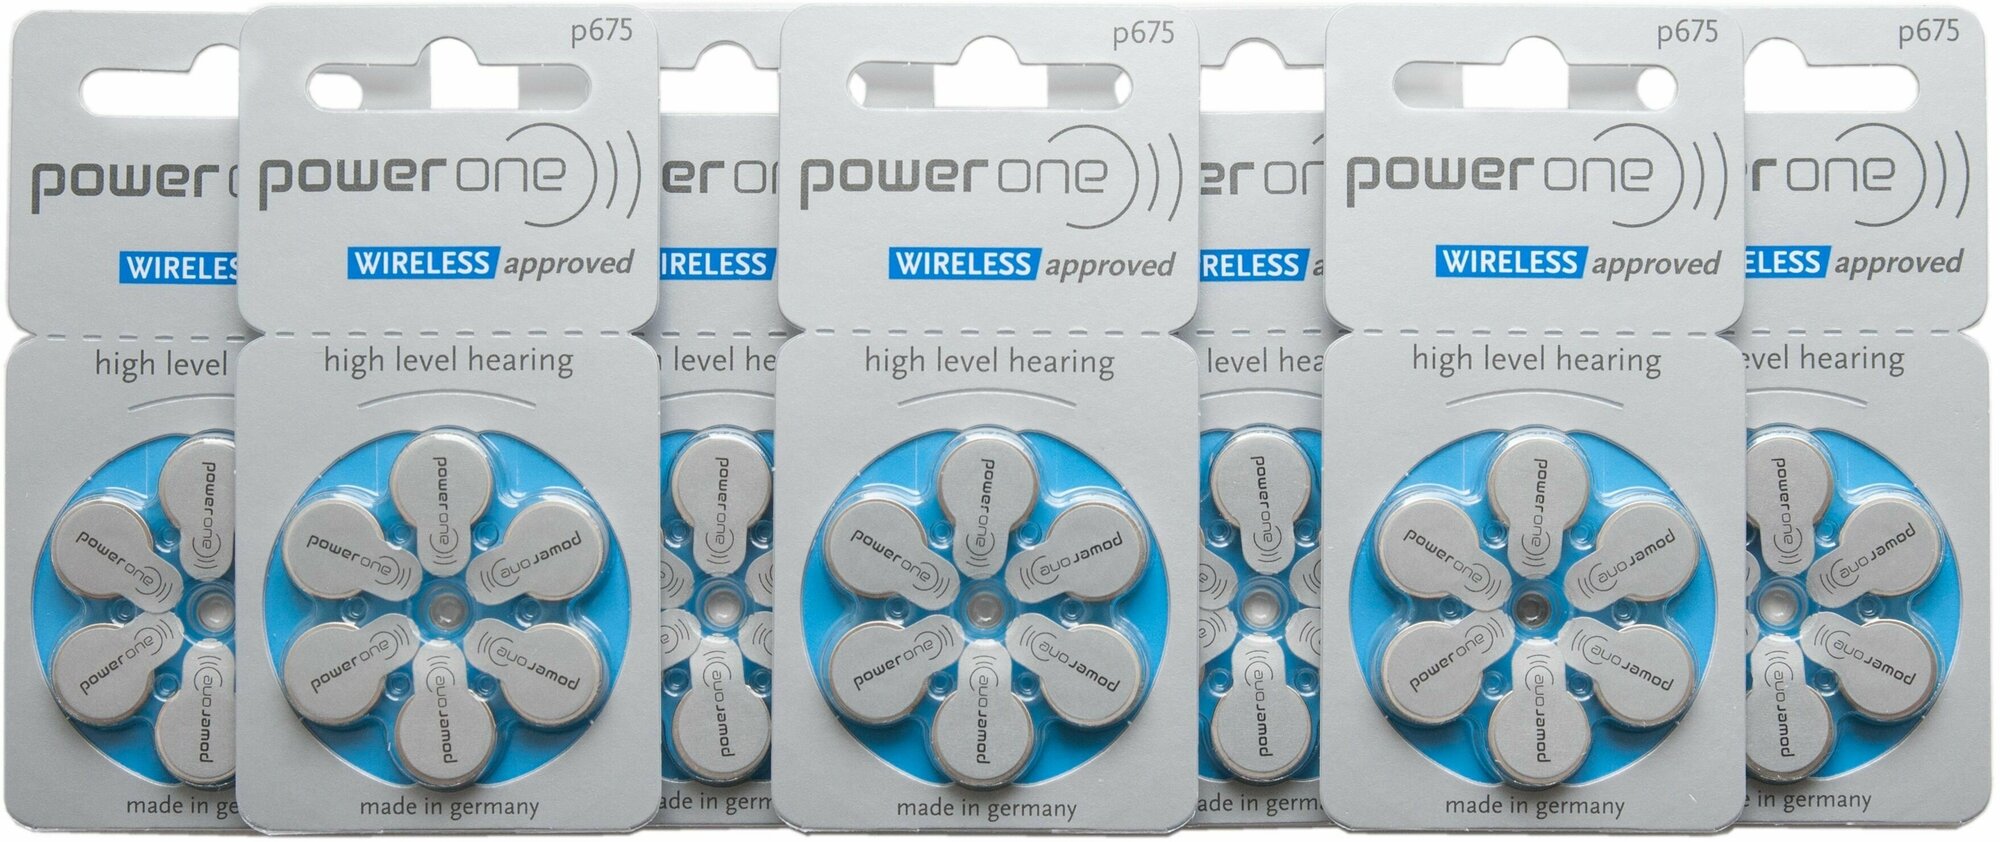 Батарейки для слухового аппарата Power One 675 (42 шт.)